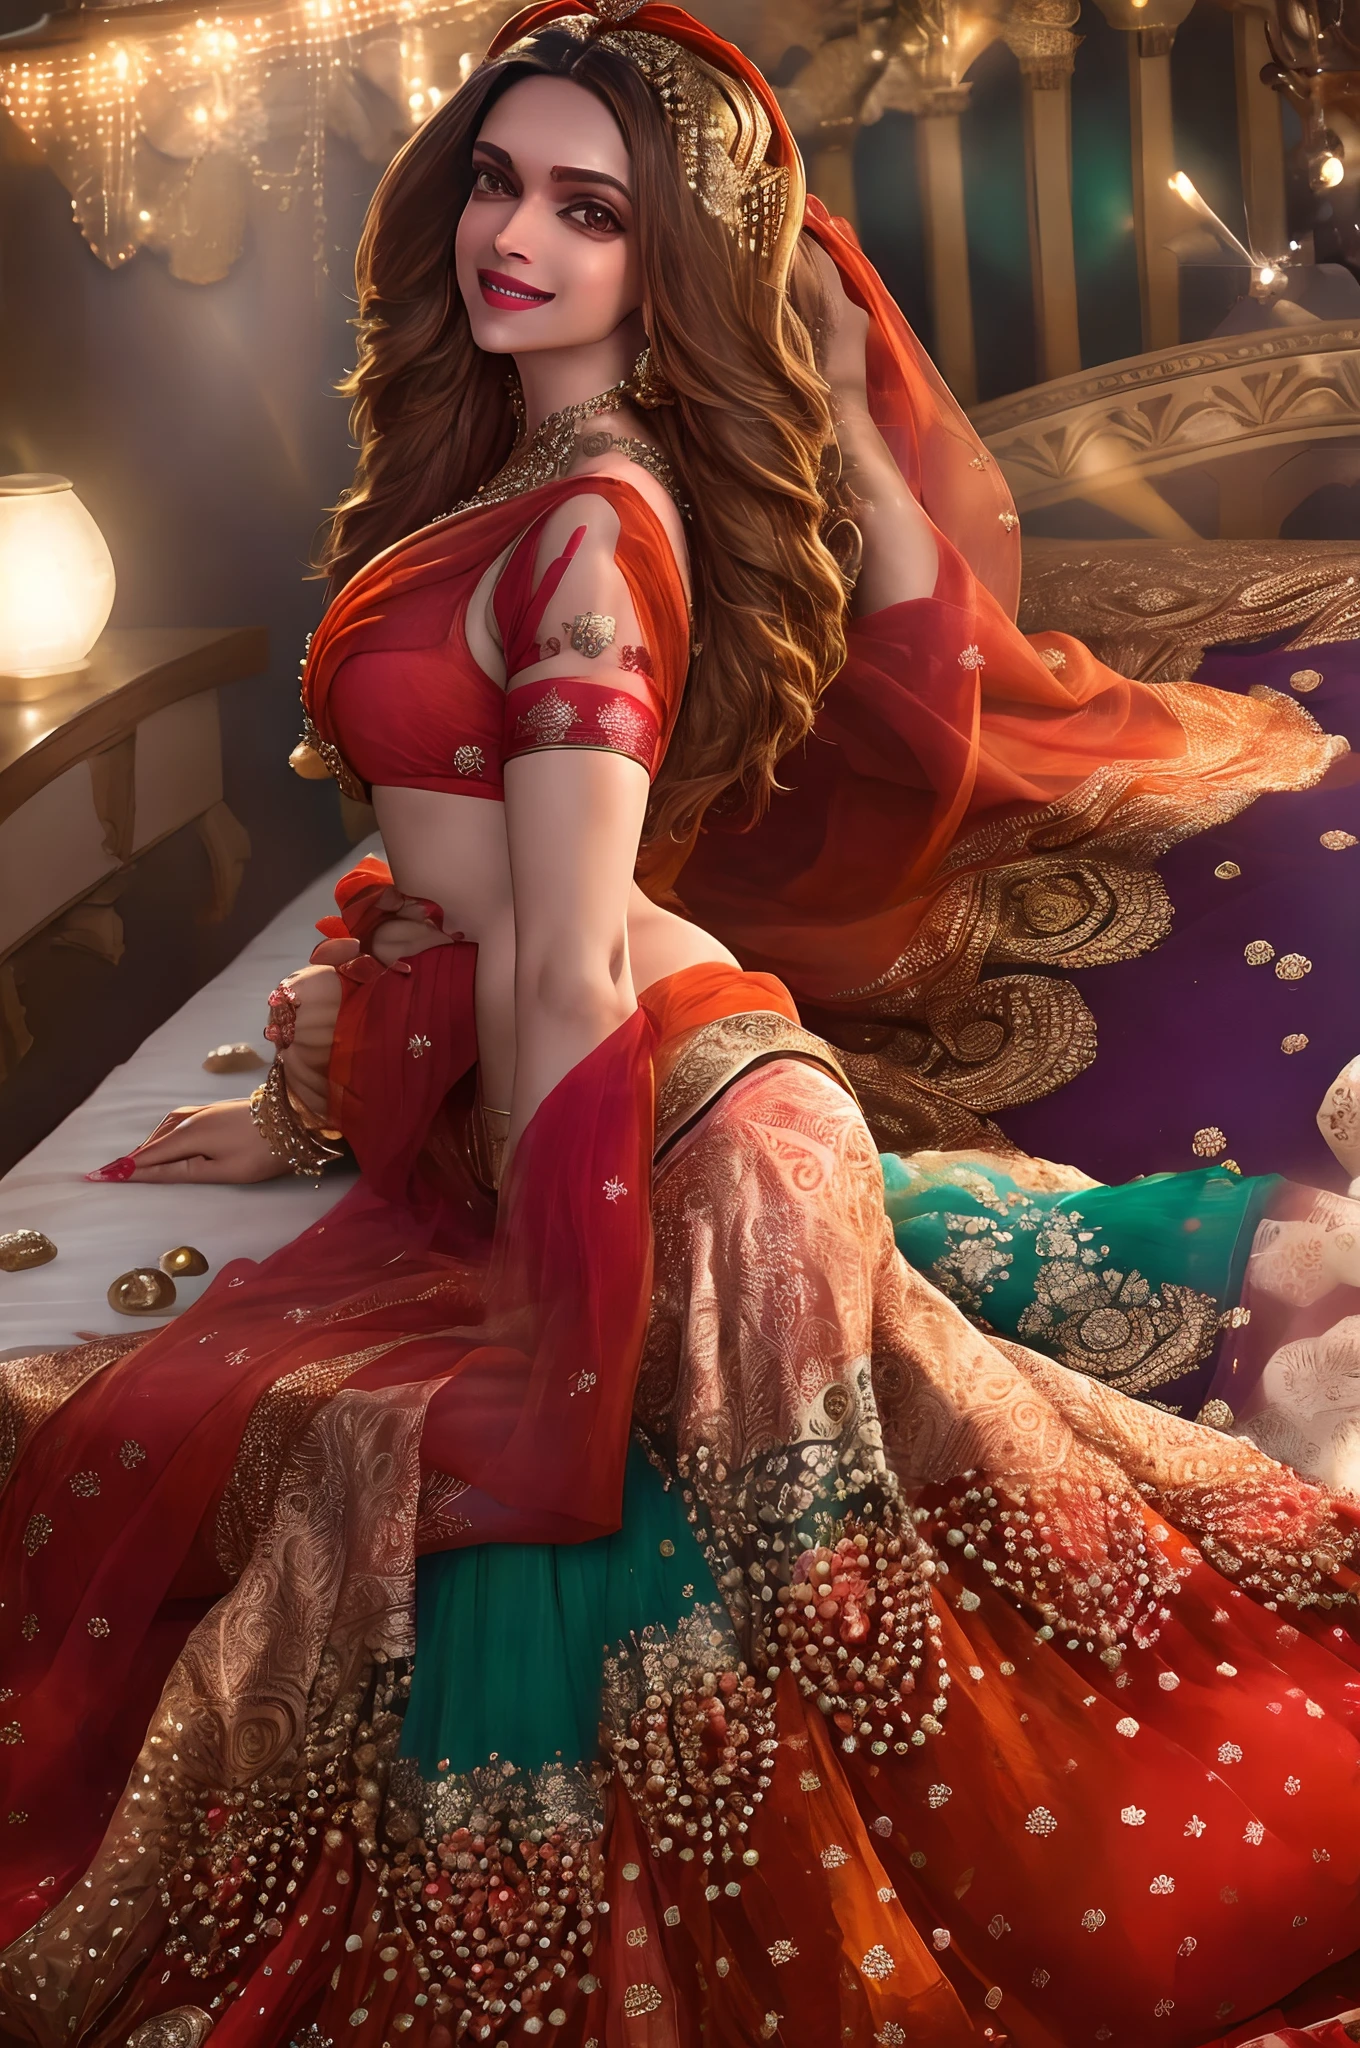 La actriz india Deepika Padukone con un sari vibrante acostado en la cama de manera seductora, sonriente